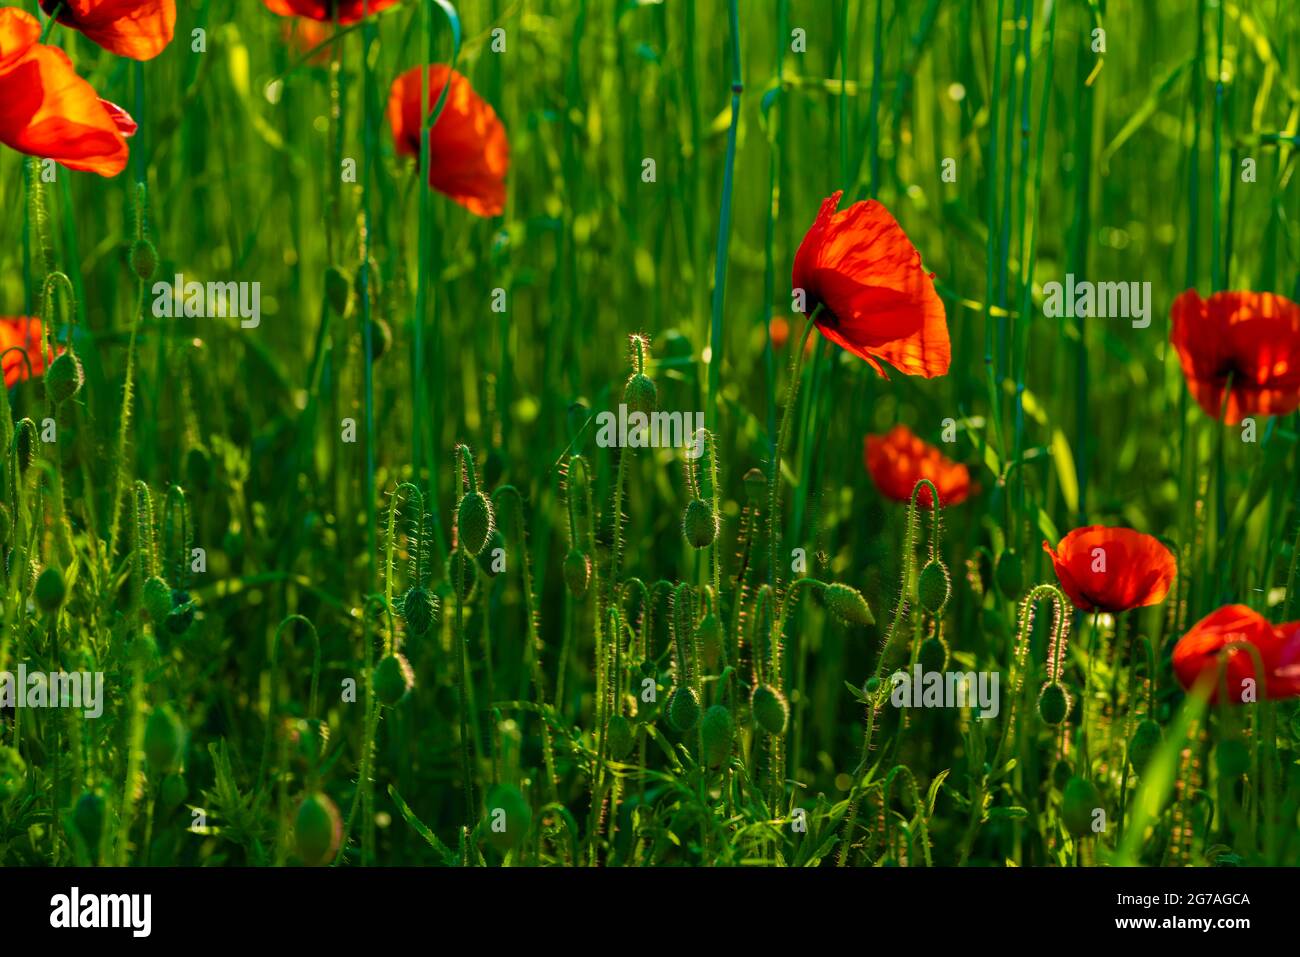 Amapolas con floración abierta en un prado, nitidez selectiva, profundidad de campo poco profunda Foto de stock